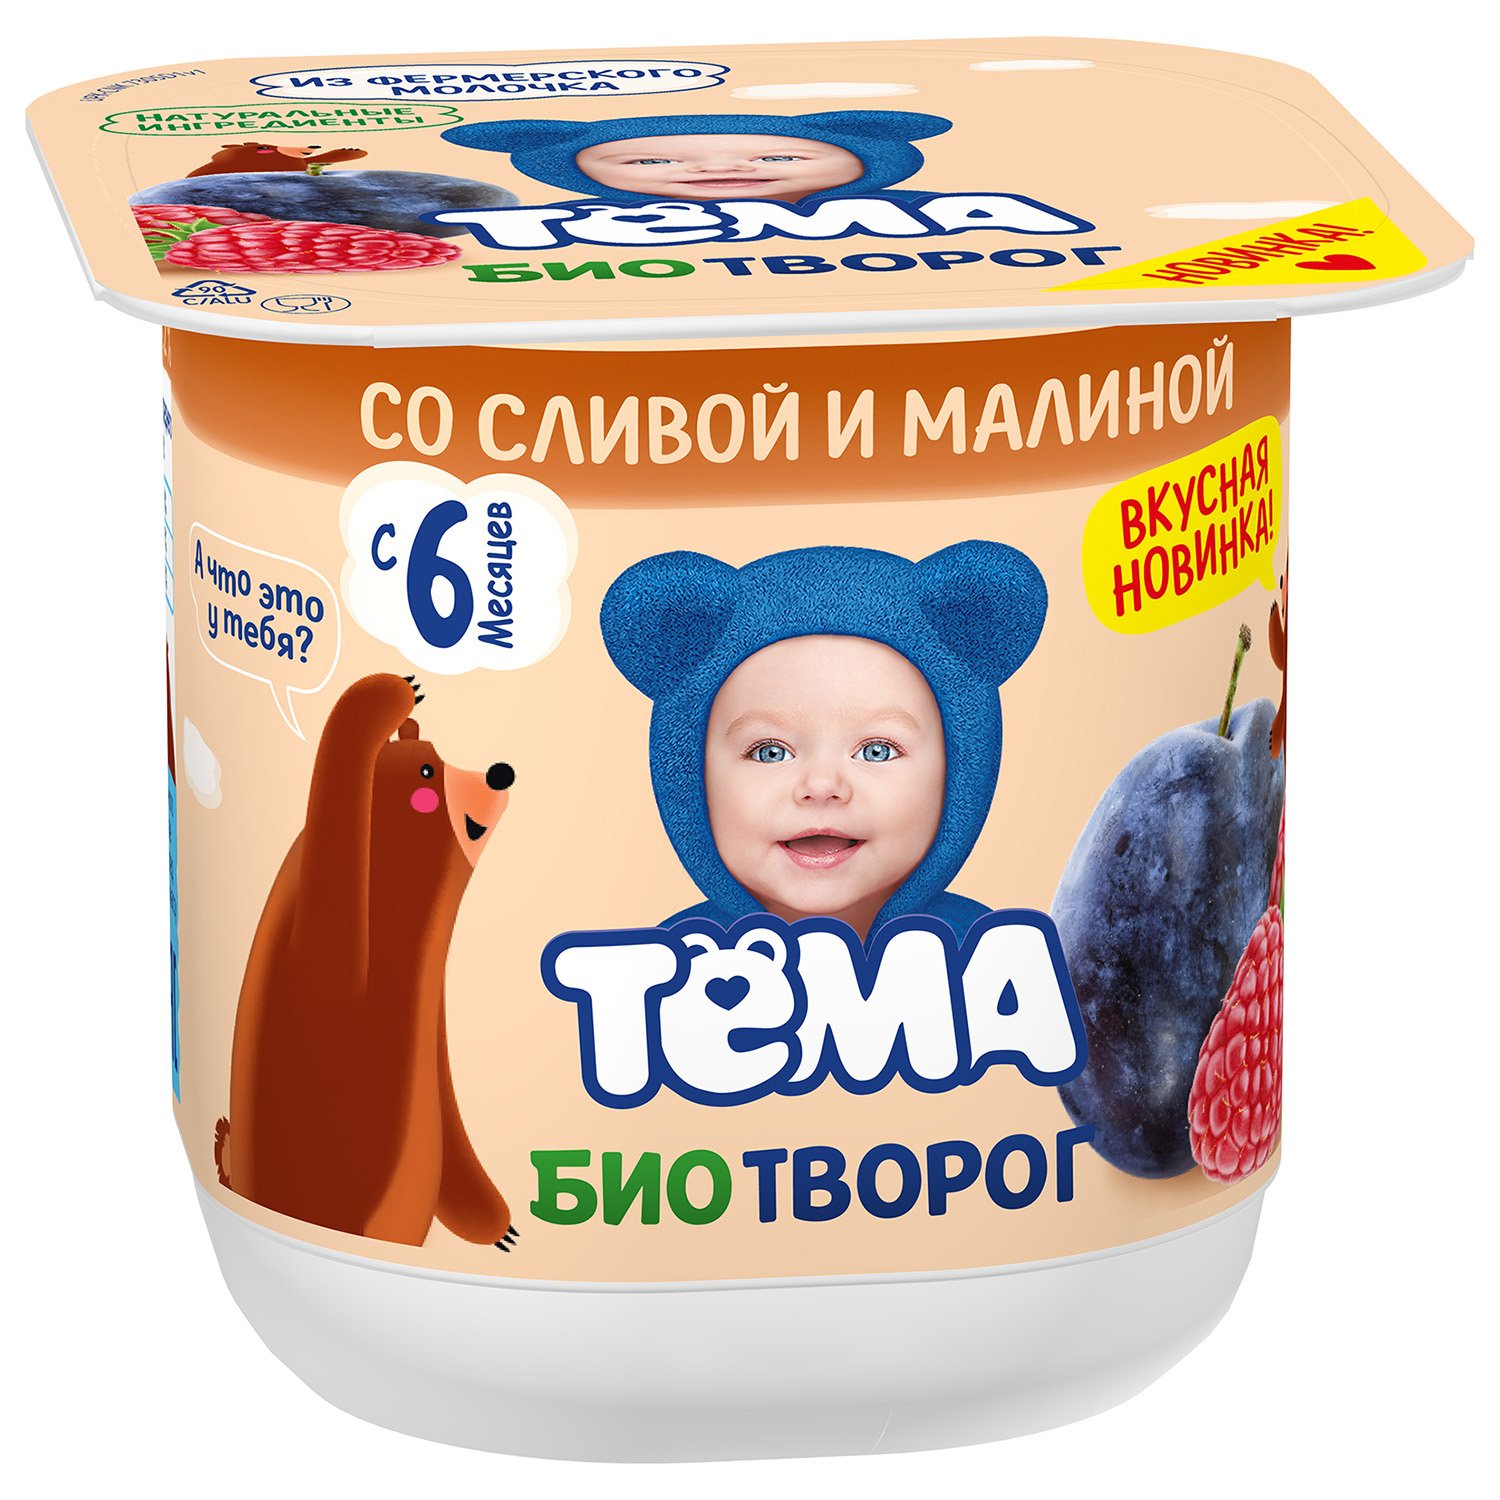 Детское питание в Симферополе